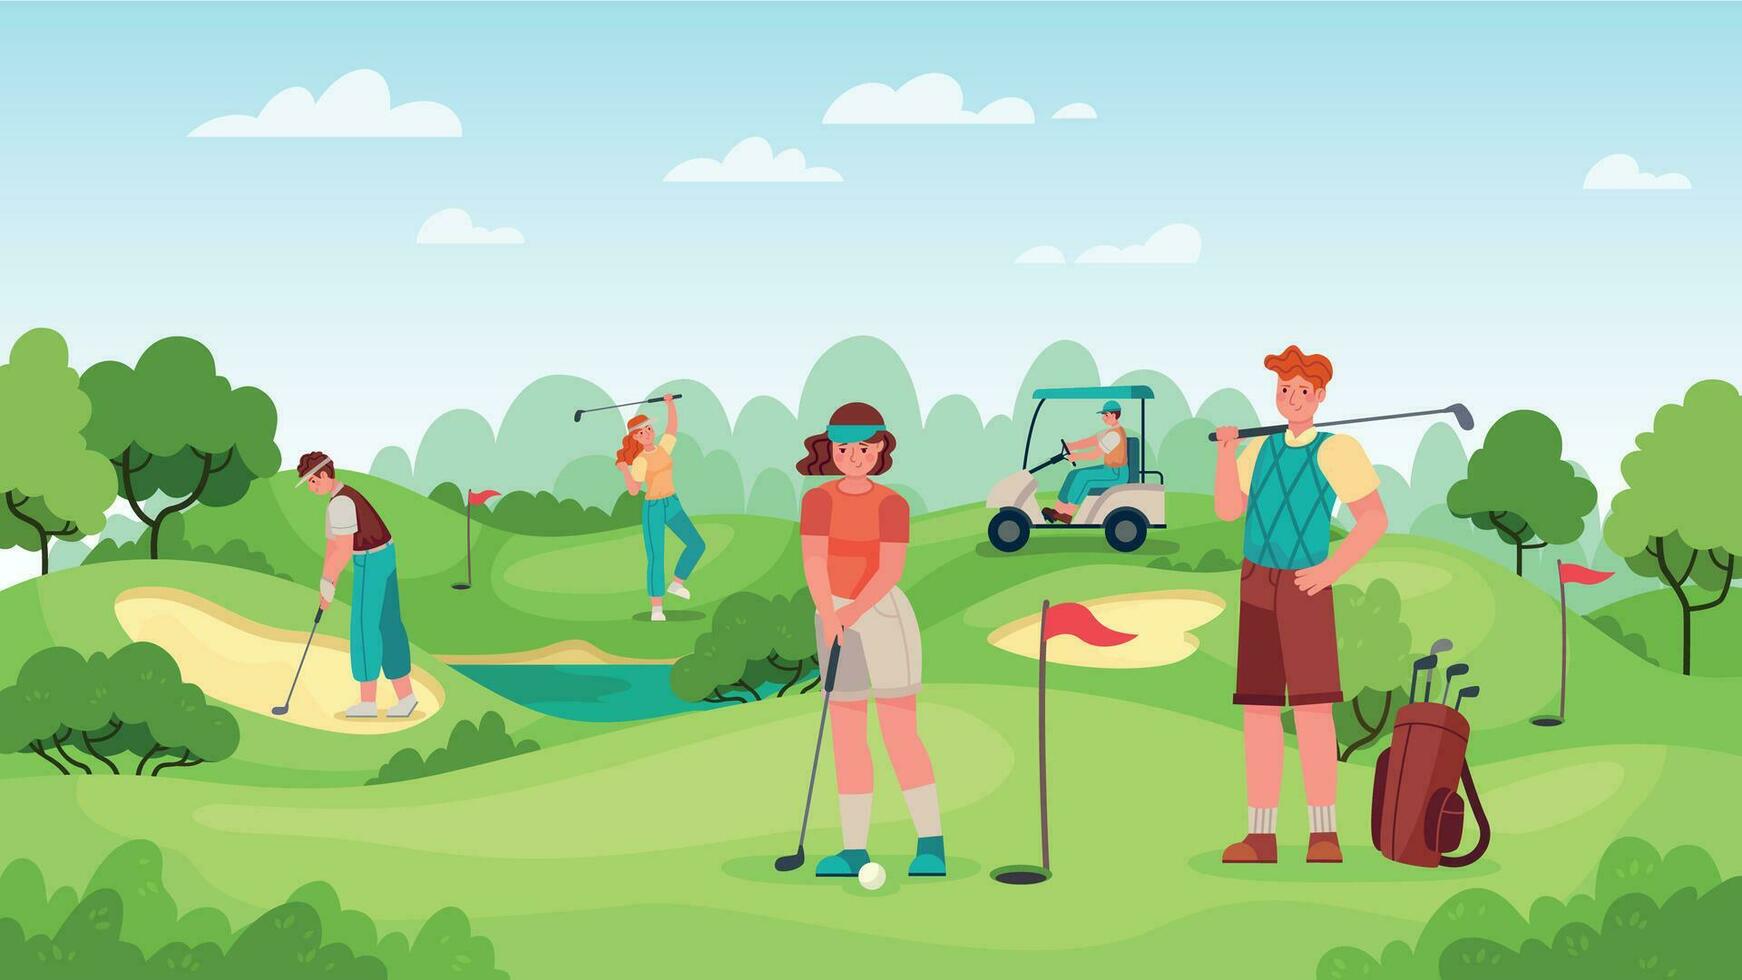 persone giocando golf. giocatori di golf coppia con golf club su verde erba, borse con attrezzatura e guida carrello, gli sport all'aperto vettore concetto.